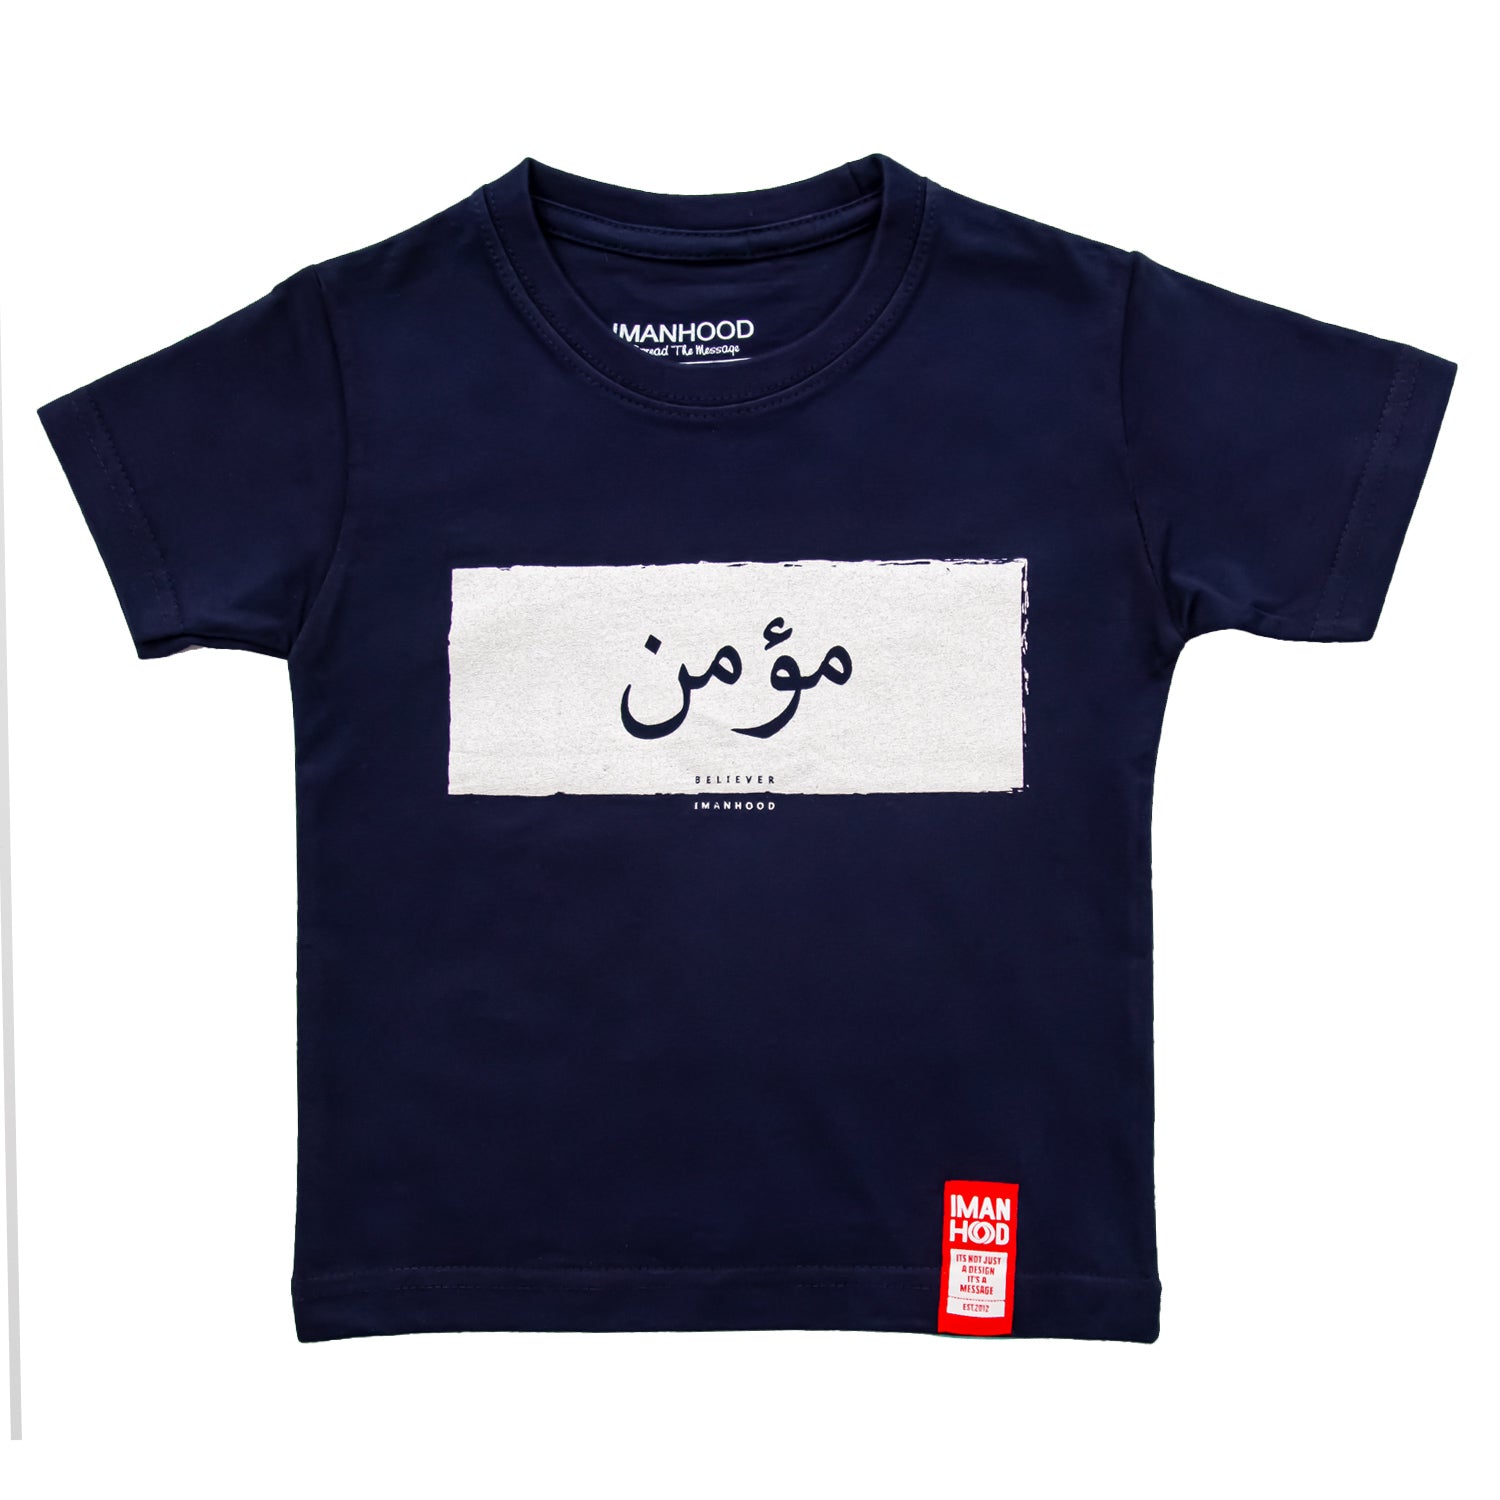 Imanhood Kids T-Shirt - Believer Navy Blue